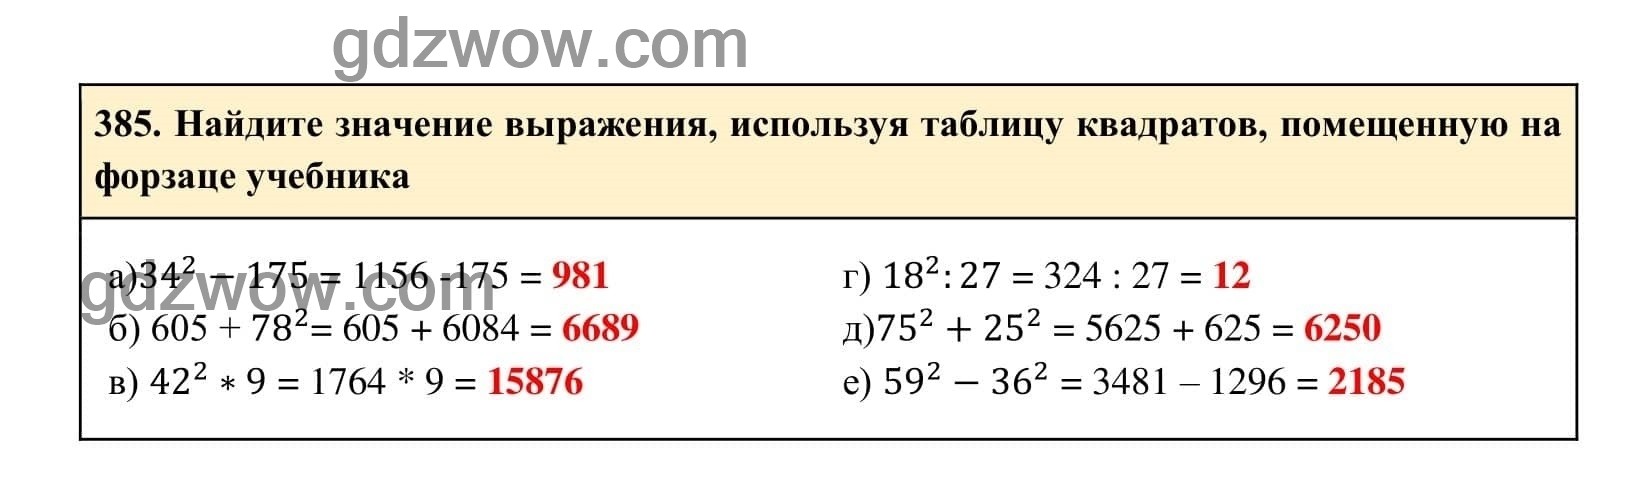 Упражнение 385 - ГДЗ по Алгебре 7 класс Учебник Макарычев (решебник) - GDZwow